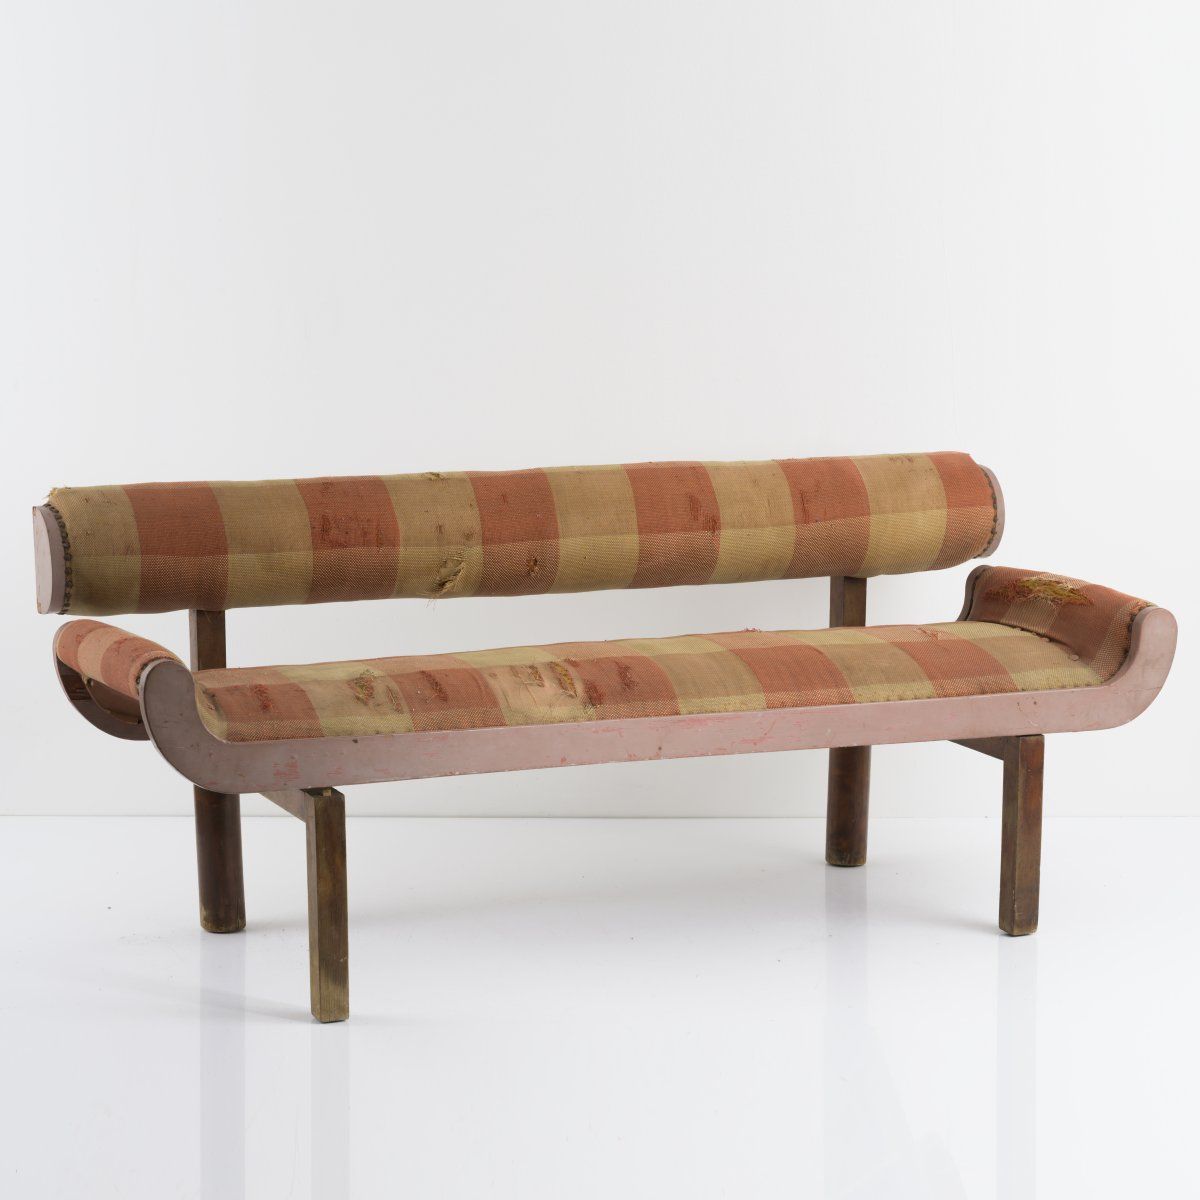 Null 弗兰兹-辛格; 弗里德尔-迪克, 沙发, 1920年代, 高74 x 176 x 67厘米.木材，深色染色，部分玫瑰色，红色和白色，原始纺织品。出处:&hellip;